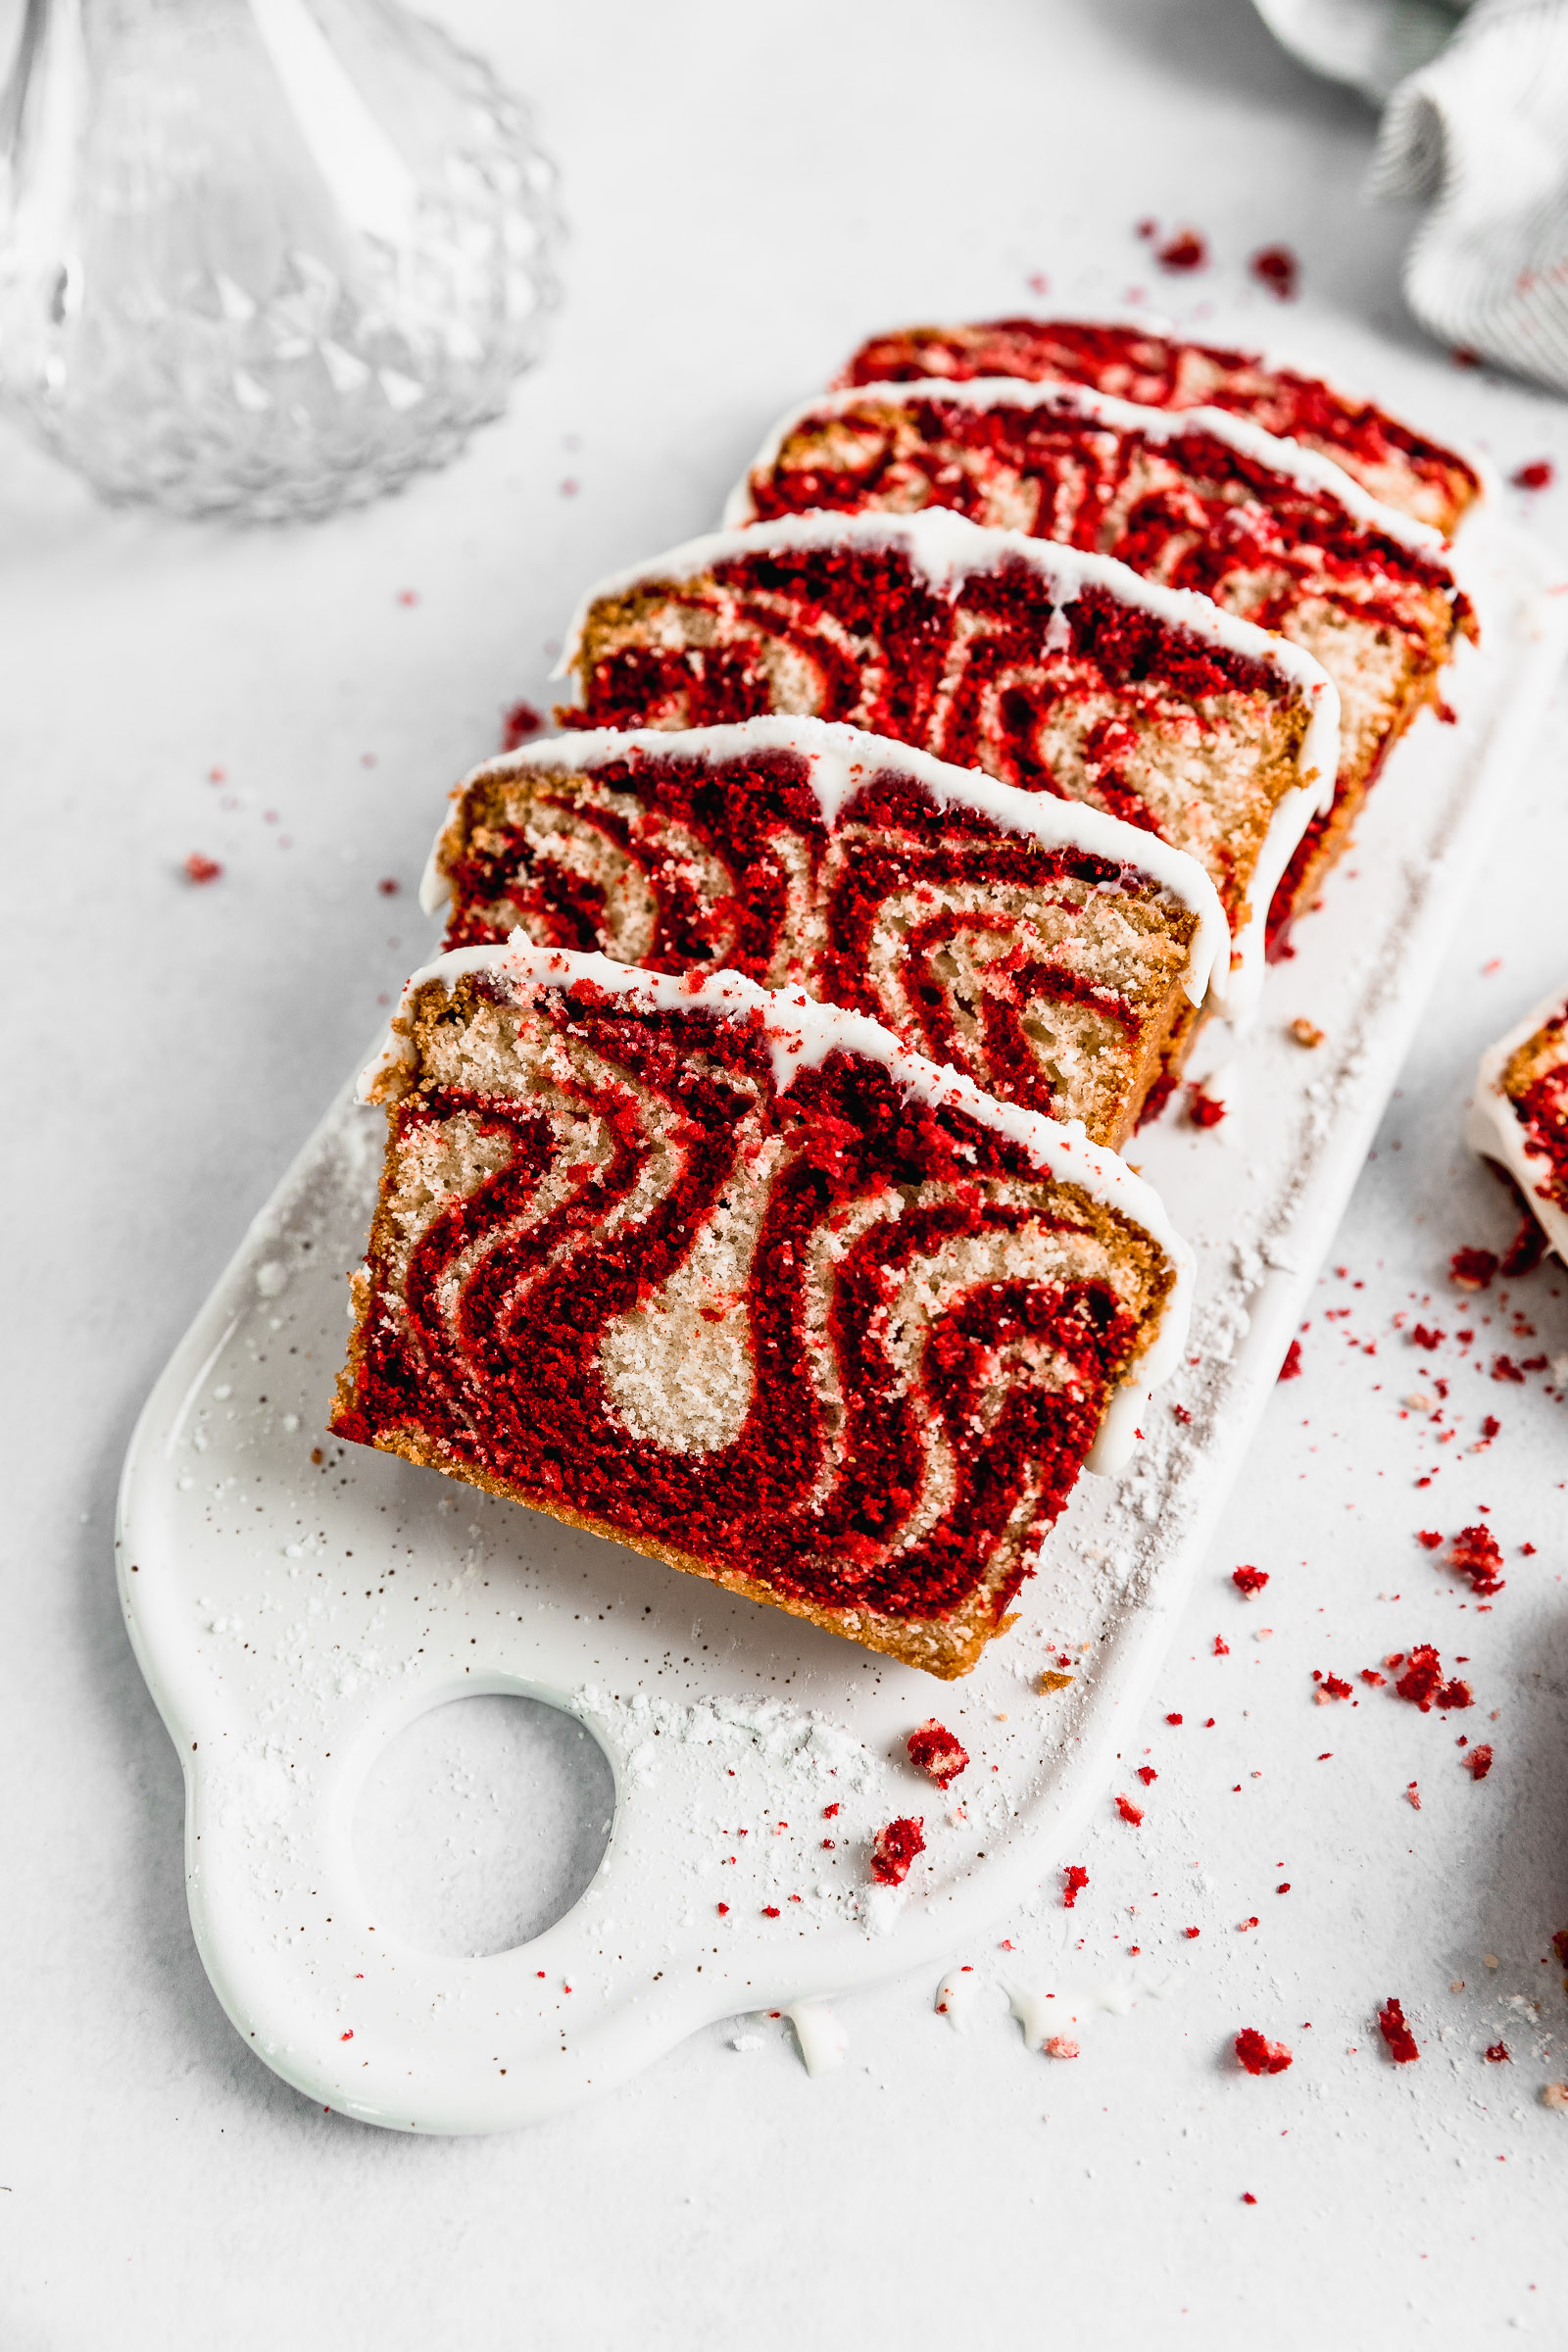 Red velvet marbled cake